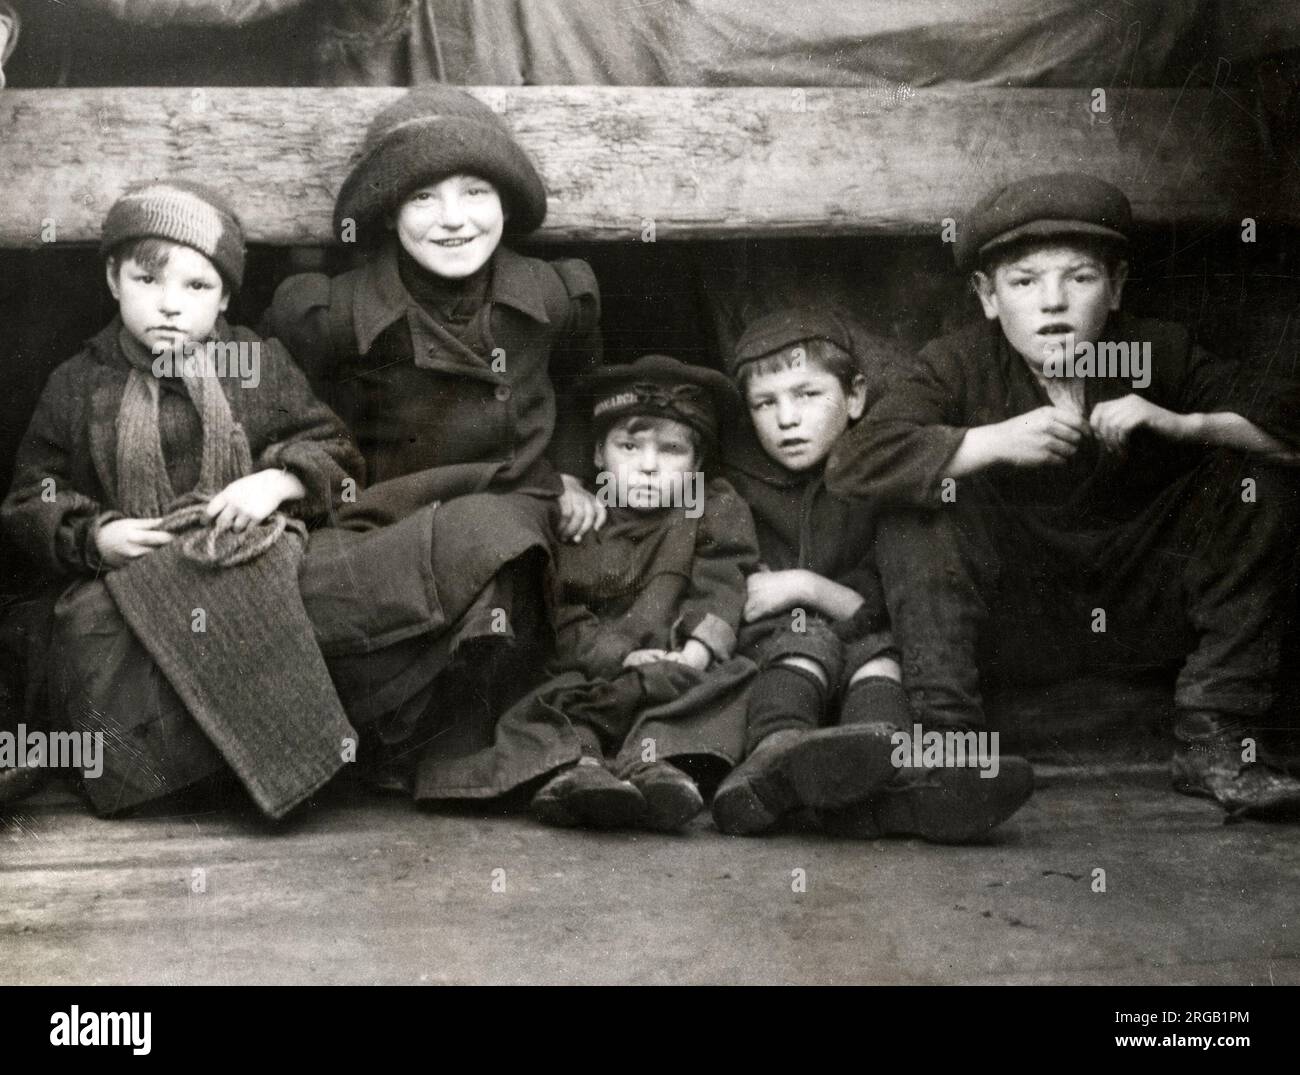 Photo de presse ancienne du début du 20th siècle - vie de famille à bord d'un bateau, histoire sociale, pauvreté, Angleterre, 1920s - groupe d'enfants Banque D'Images